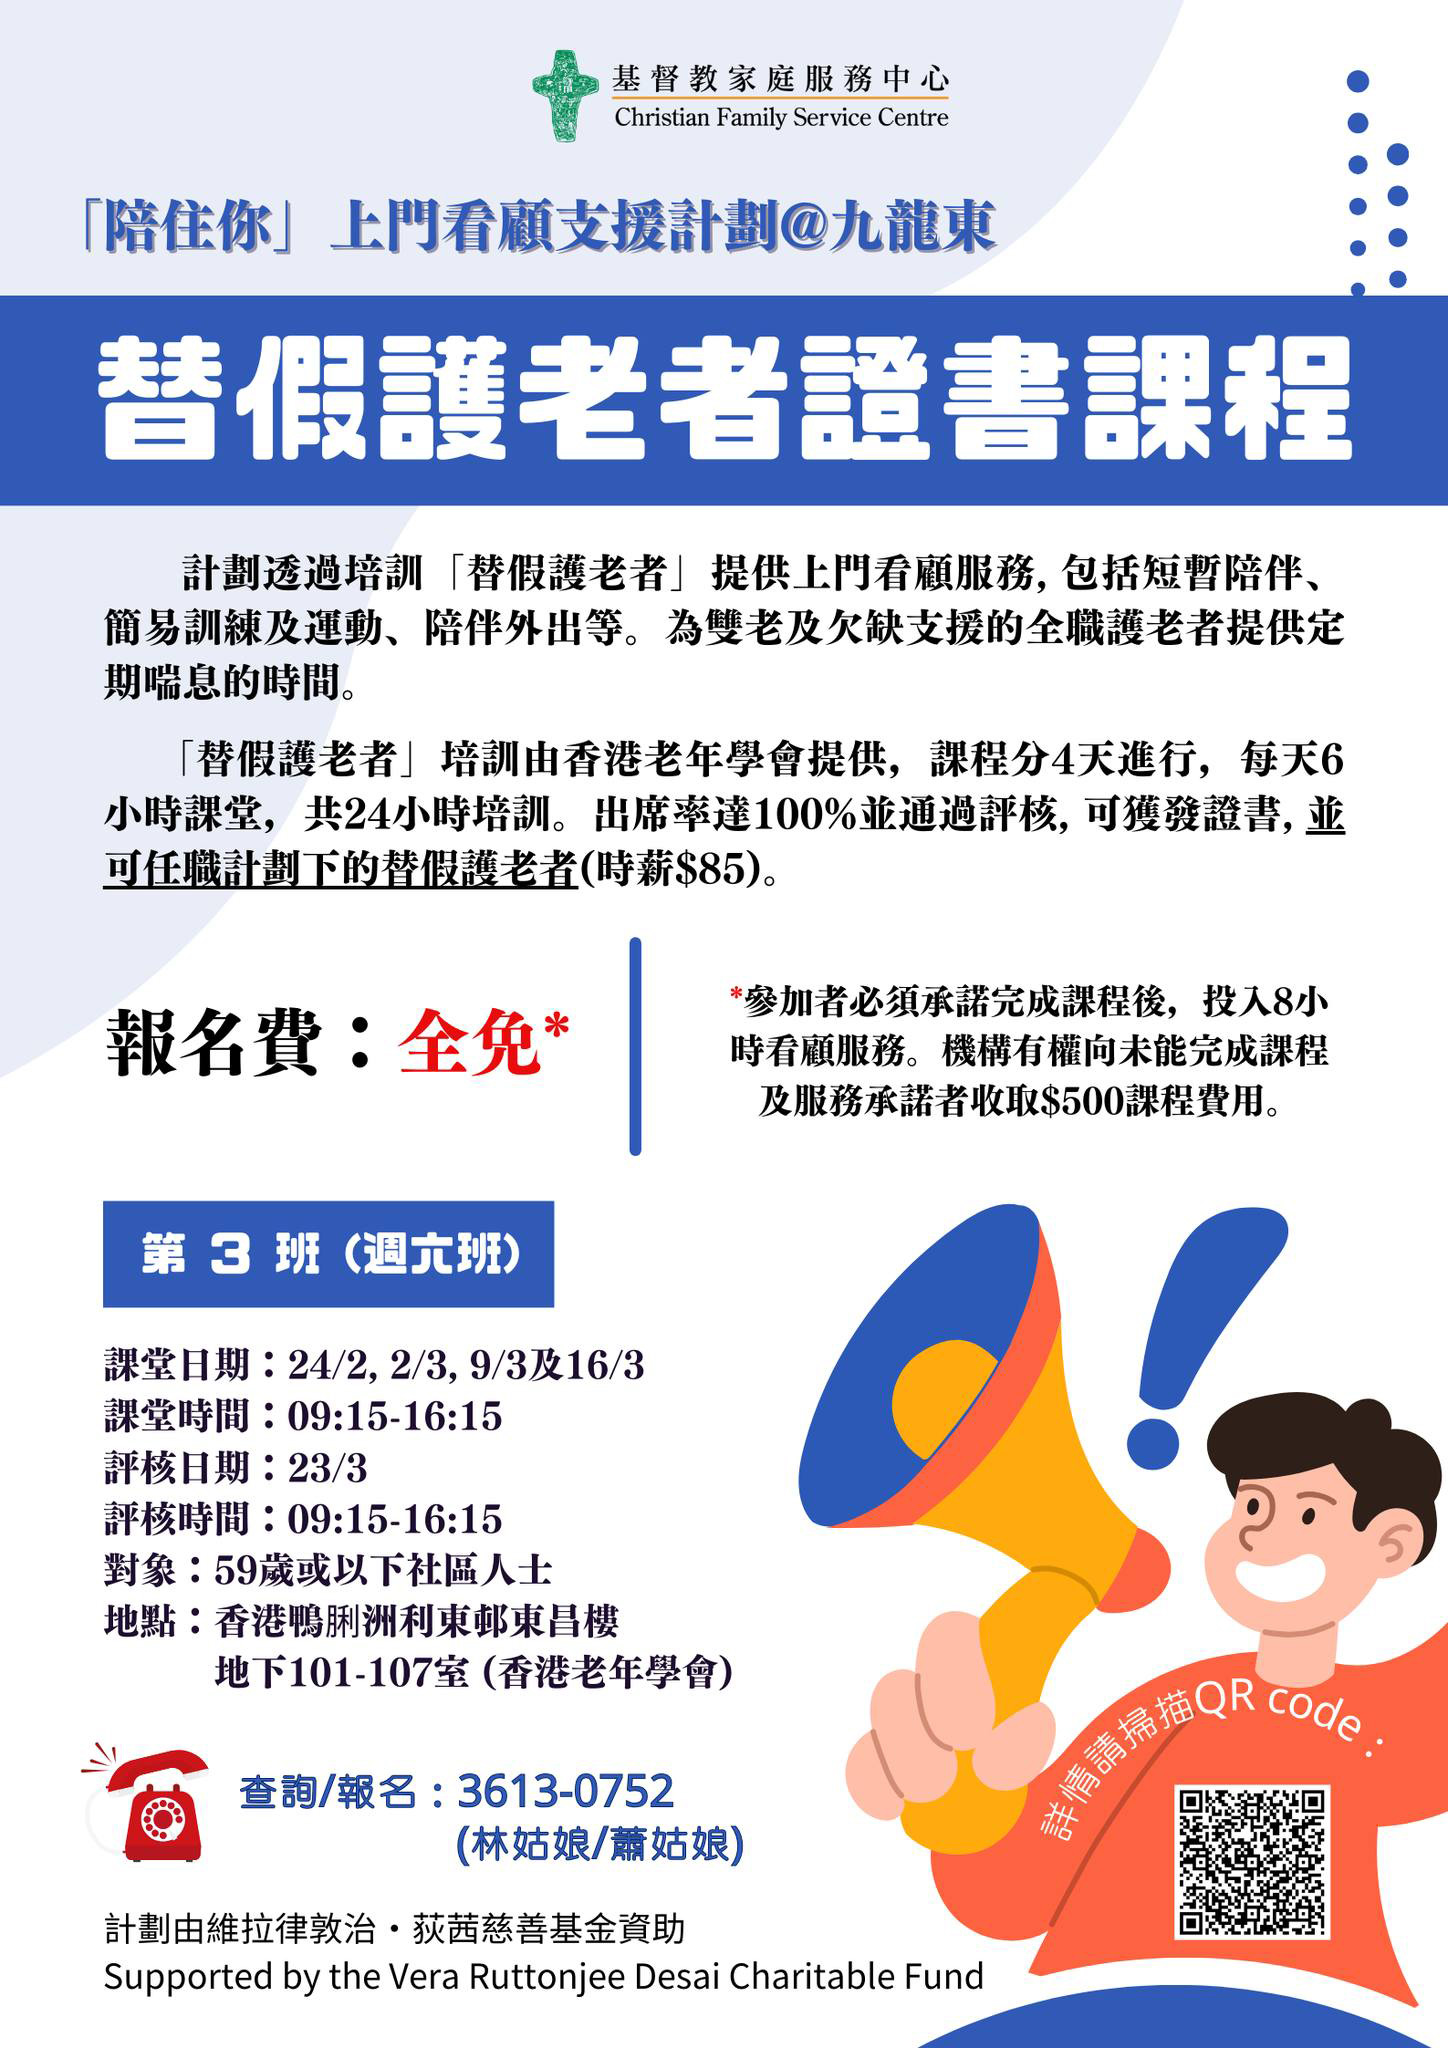 「陪住你」上門看顧支援計劃@九龍東  「替假護老者培訓課程」 現正招生 報名費全免